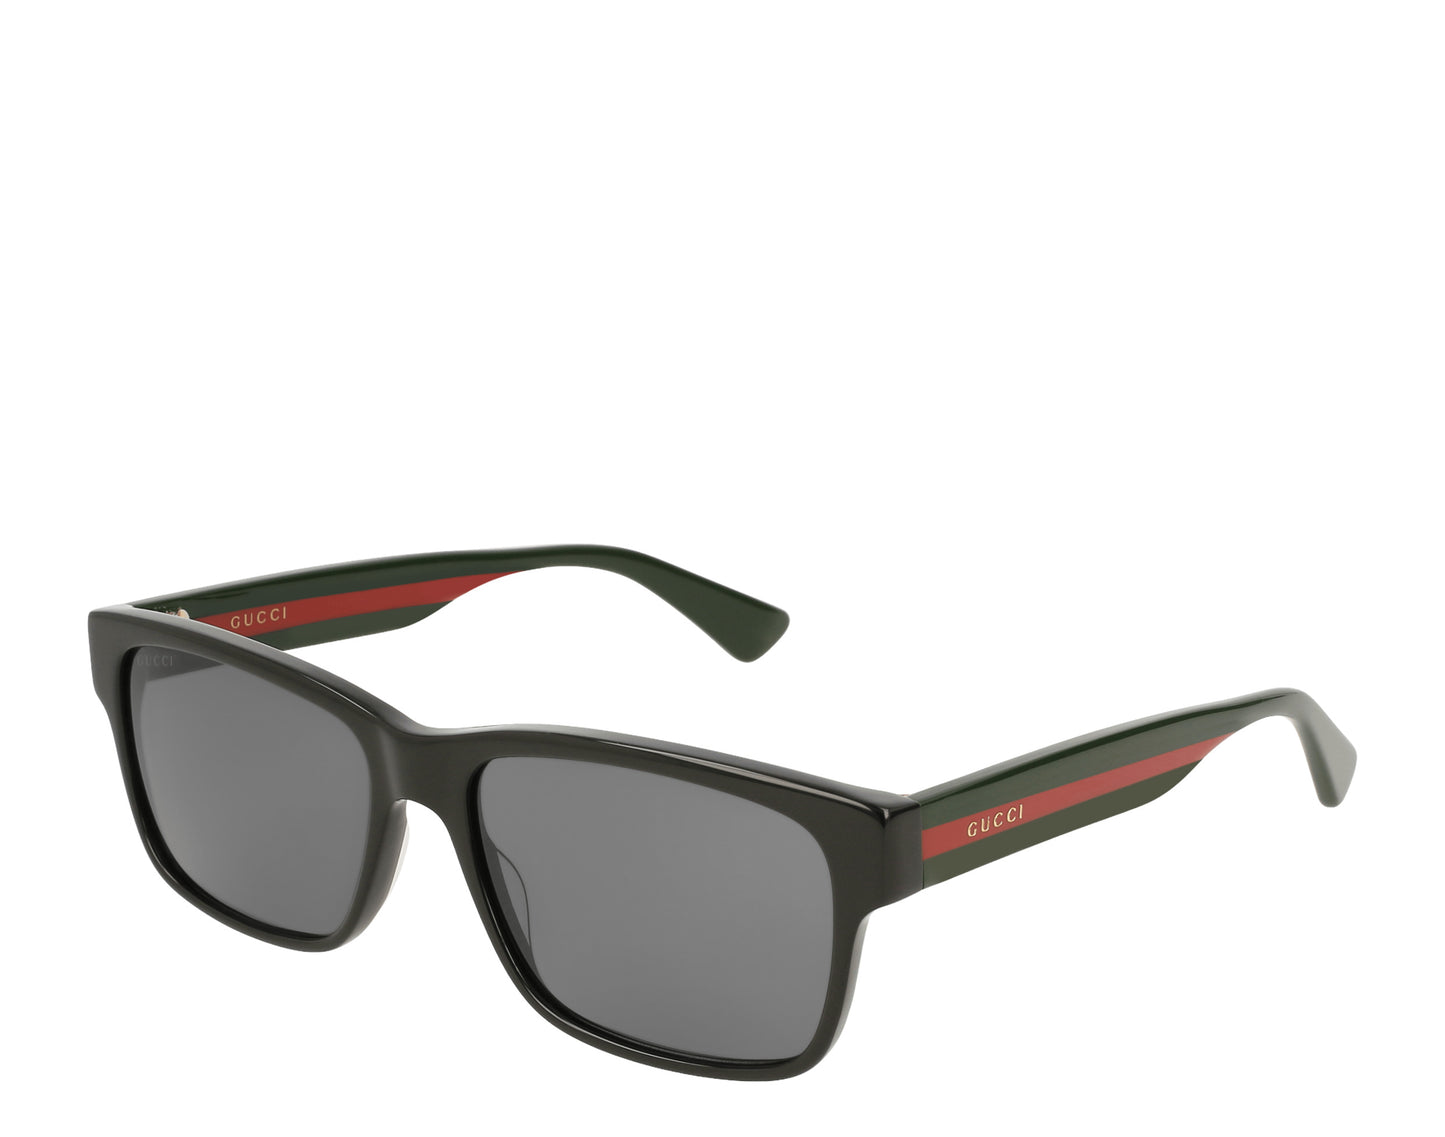 Gucci GG0340S Men's Sunglasses